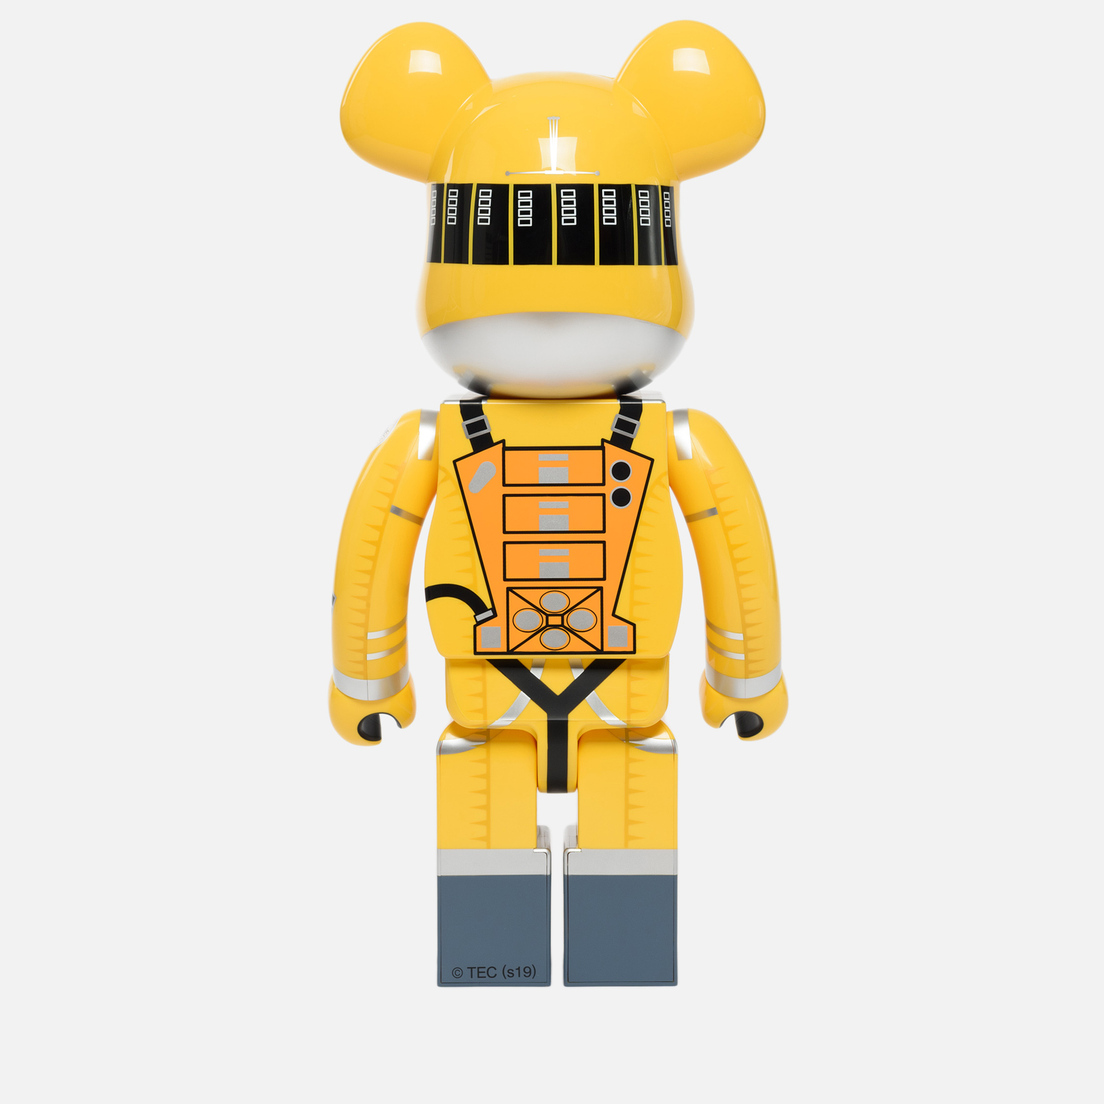 Medicom Toy Игрушка Bearbrick Space Suit Yellow 1000%